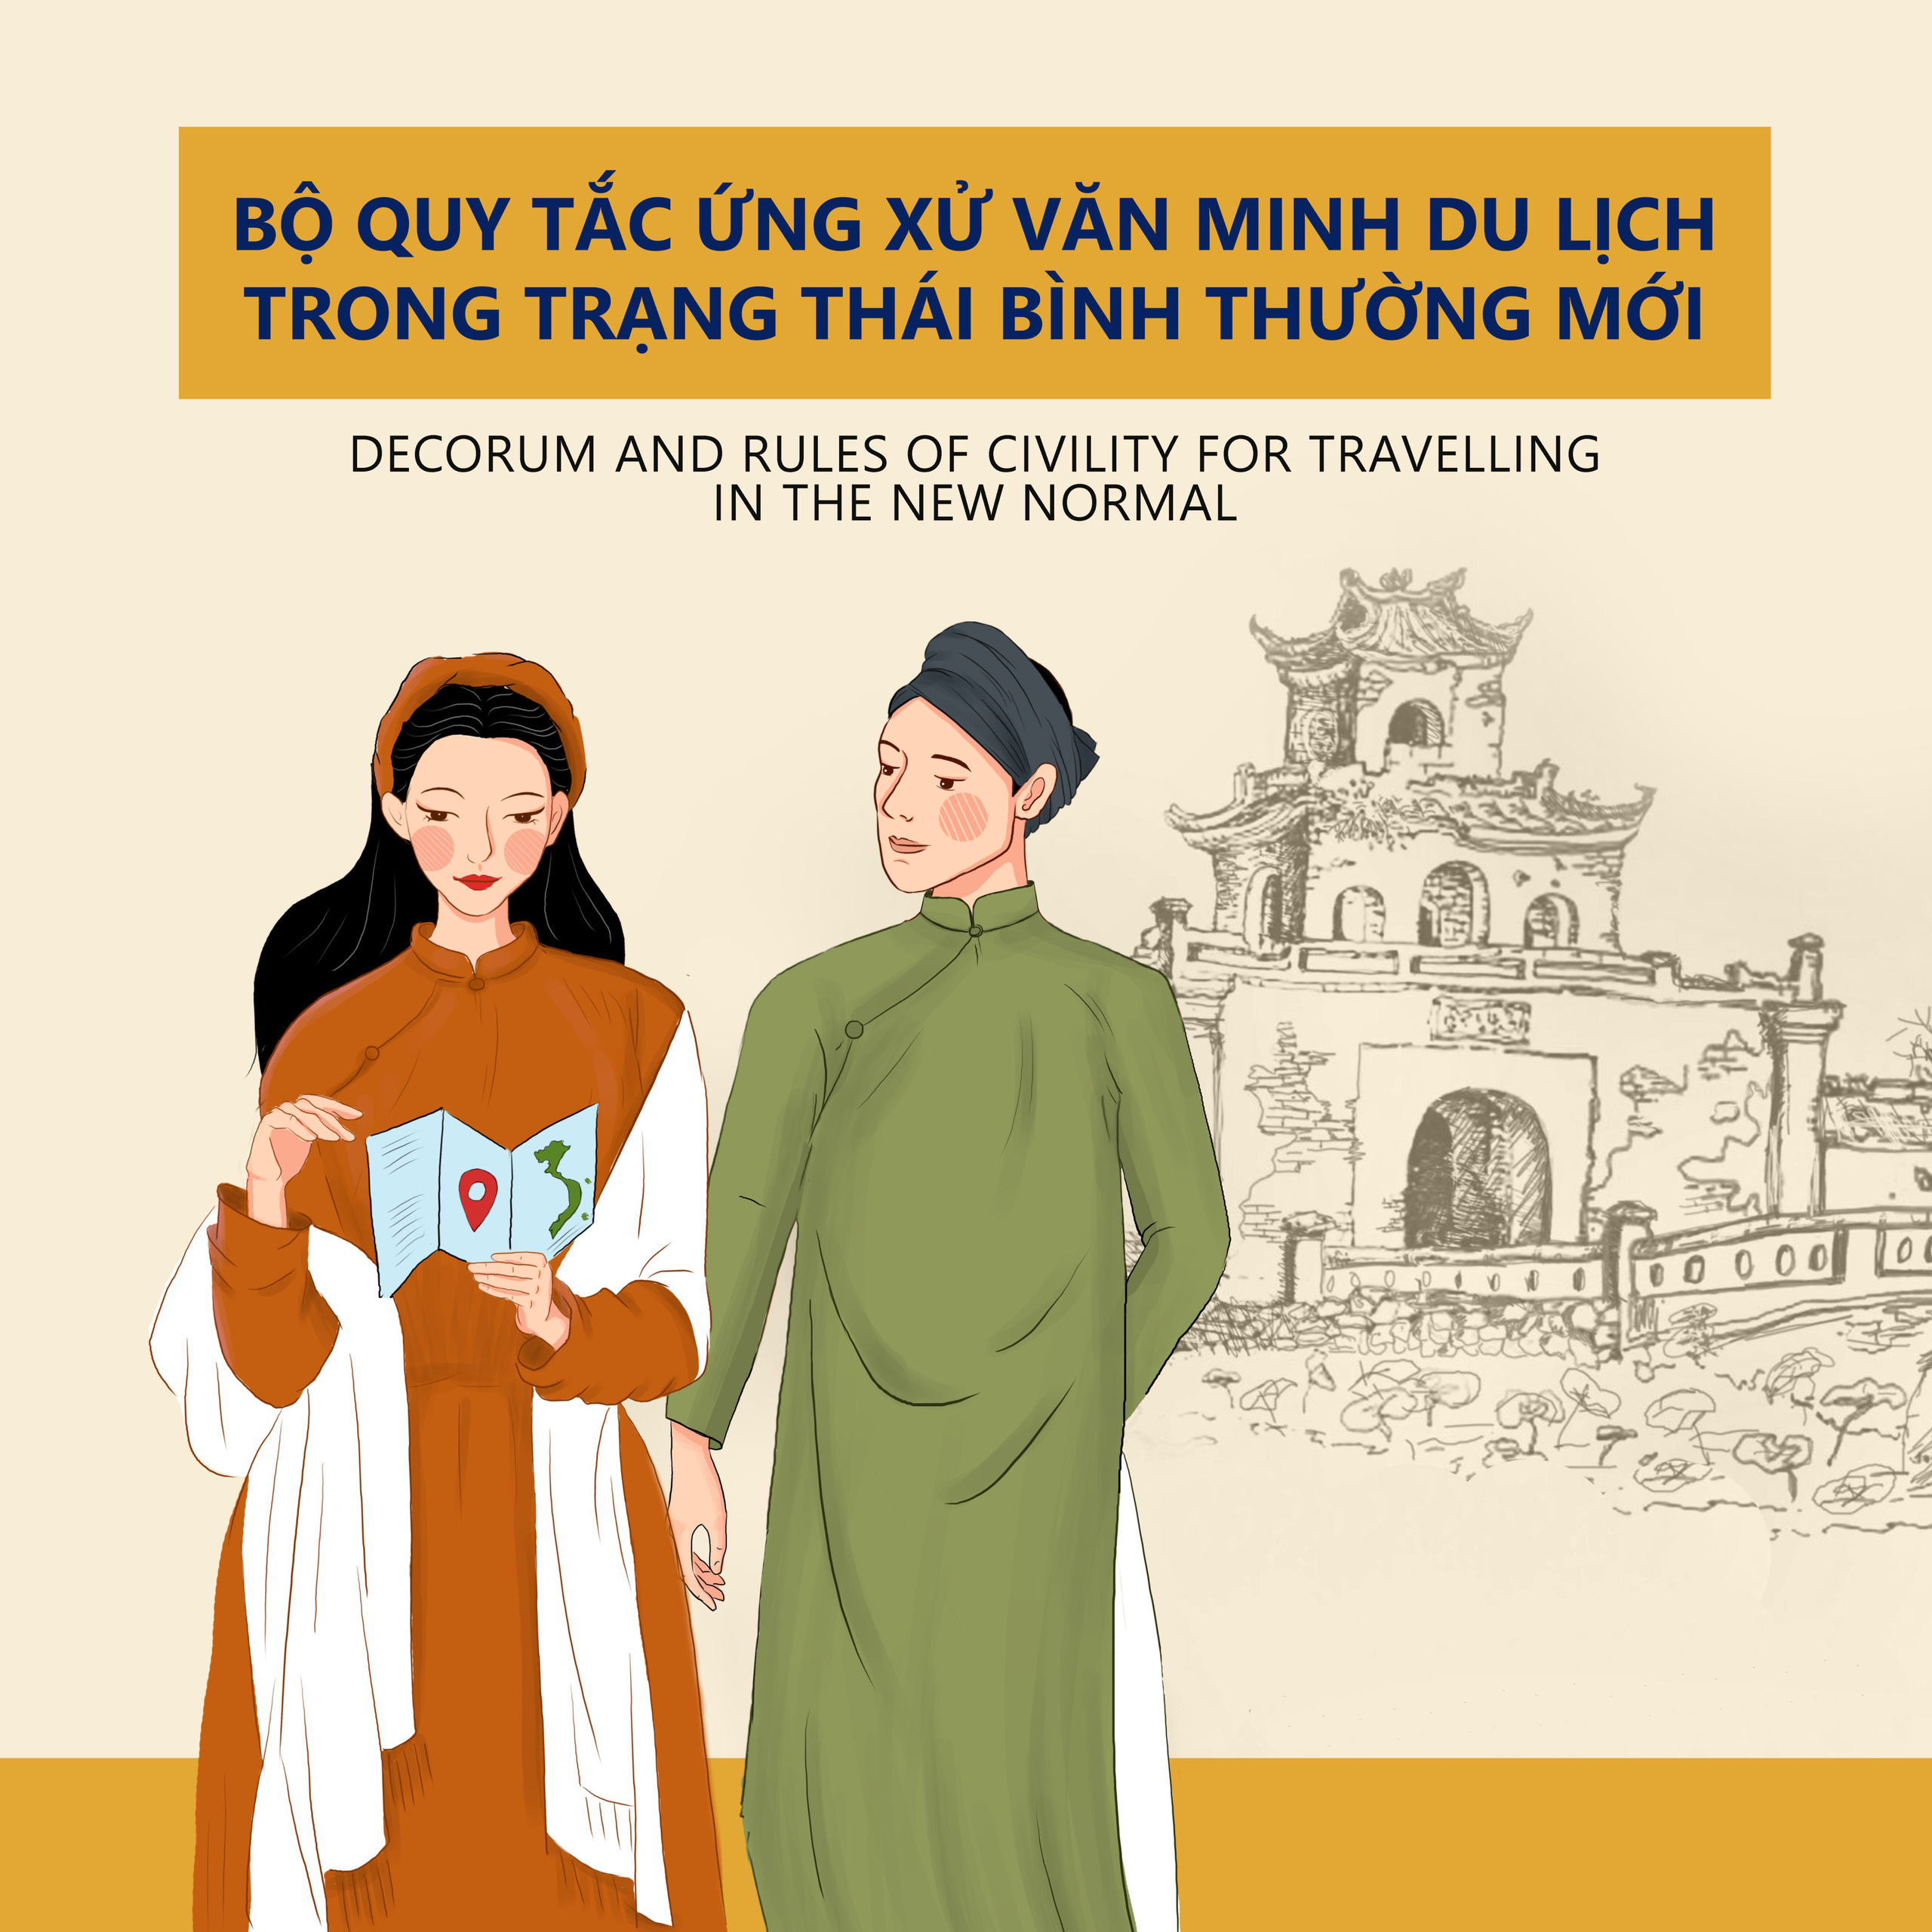 Thừa Thiên Huế ban hành Bộ Quy tắc ứng xử văn minh du lịch trong trạng thái bình thường mới - Ảnh 1.